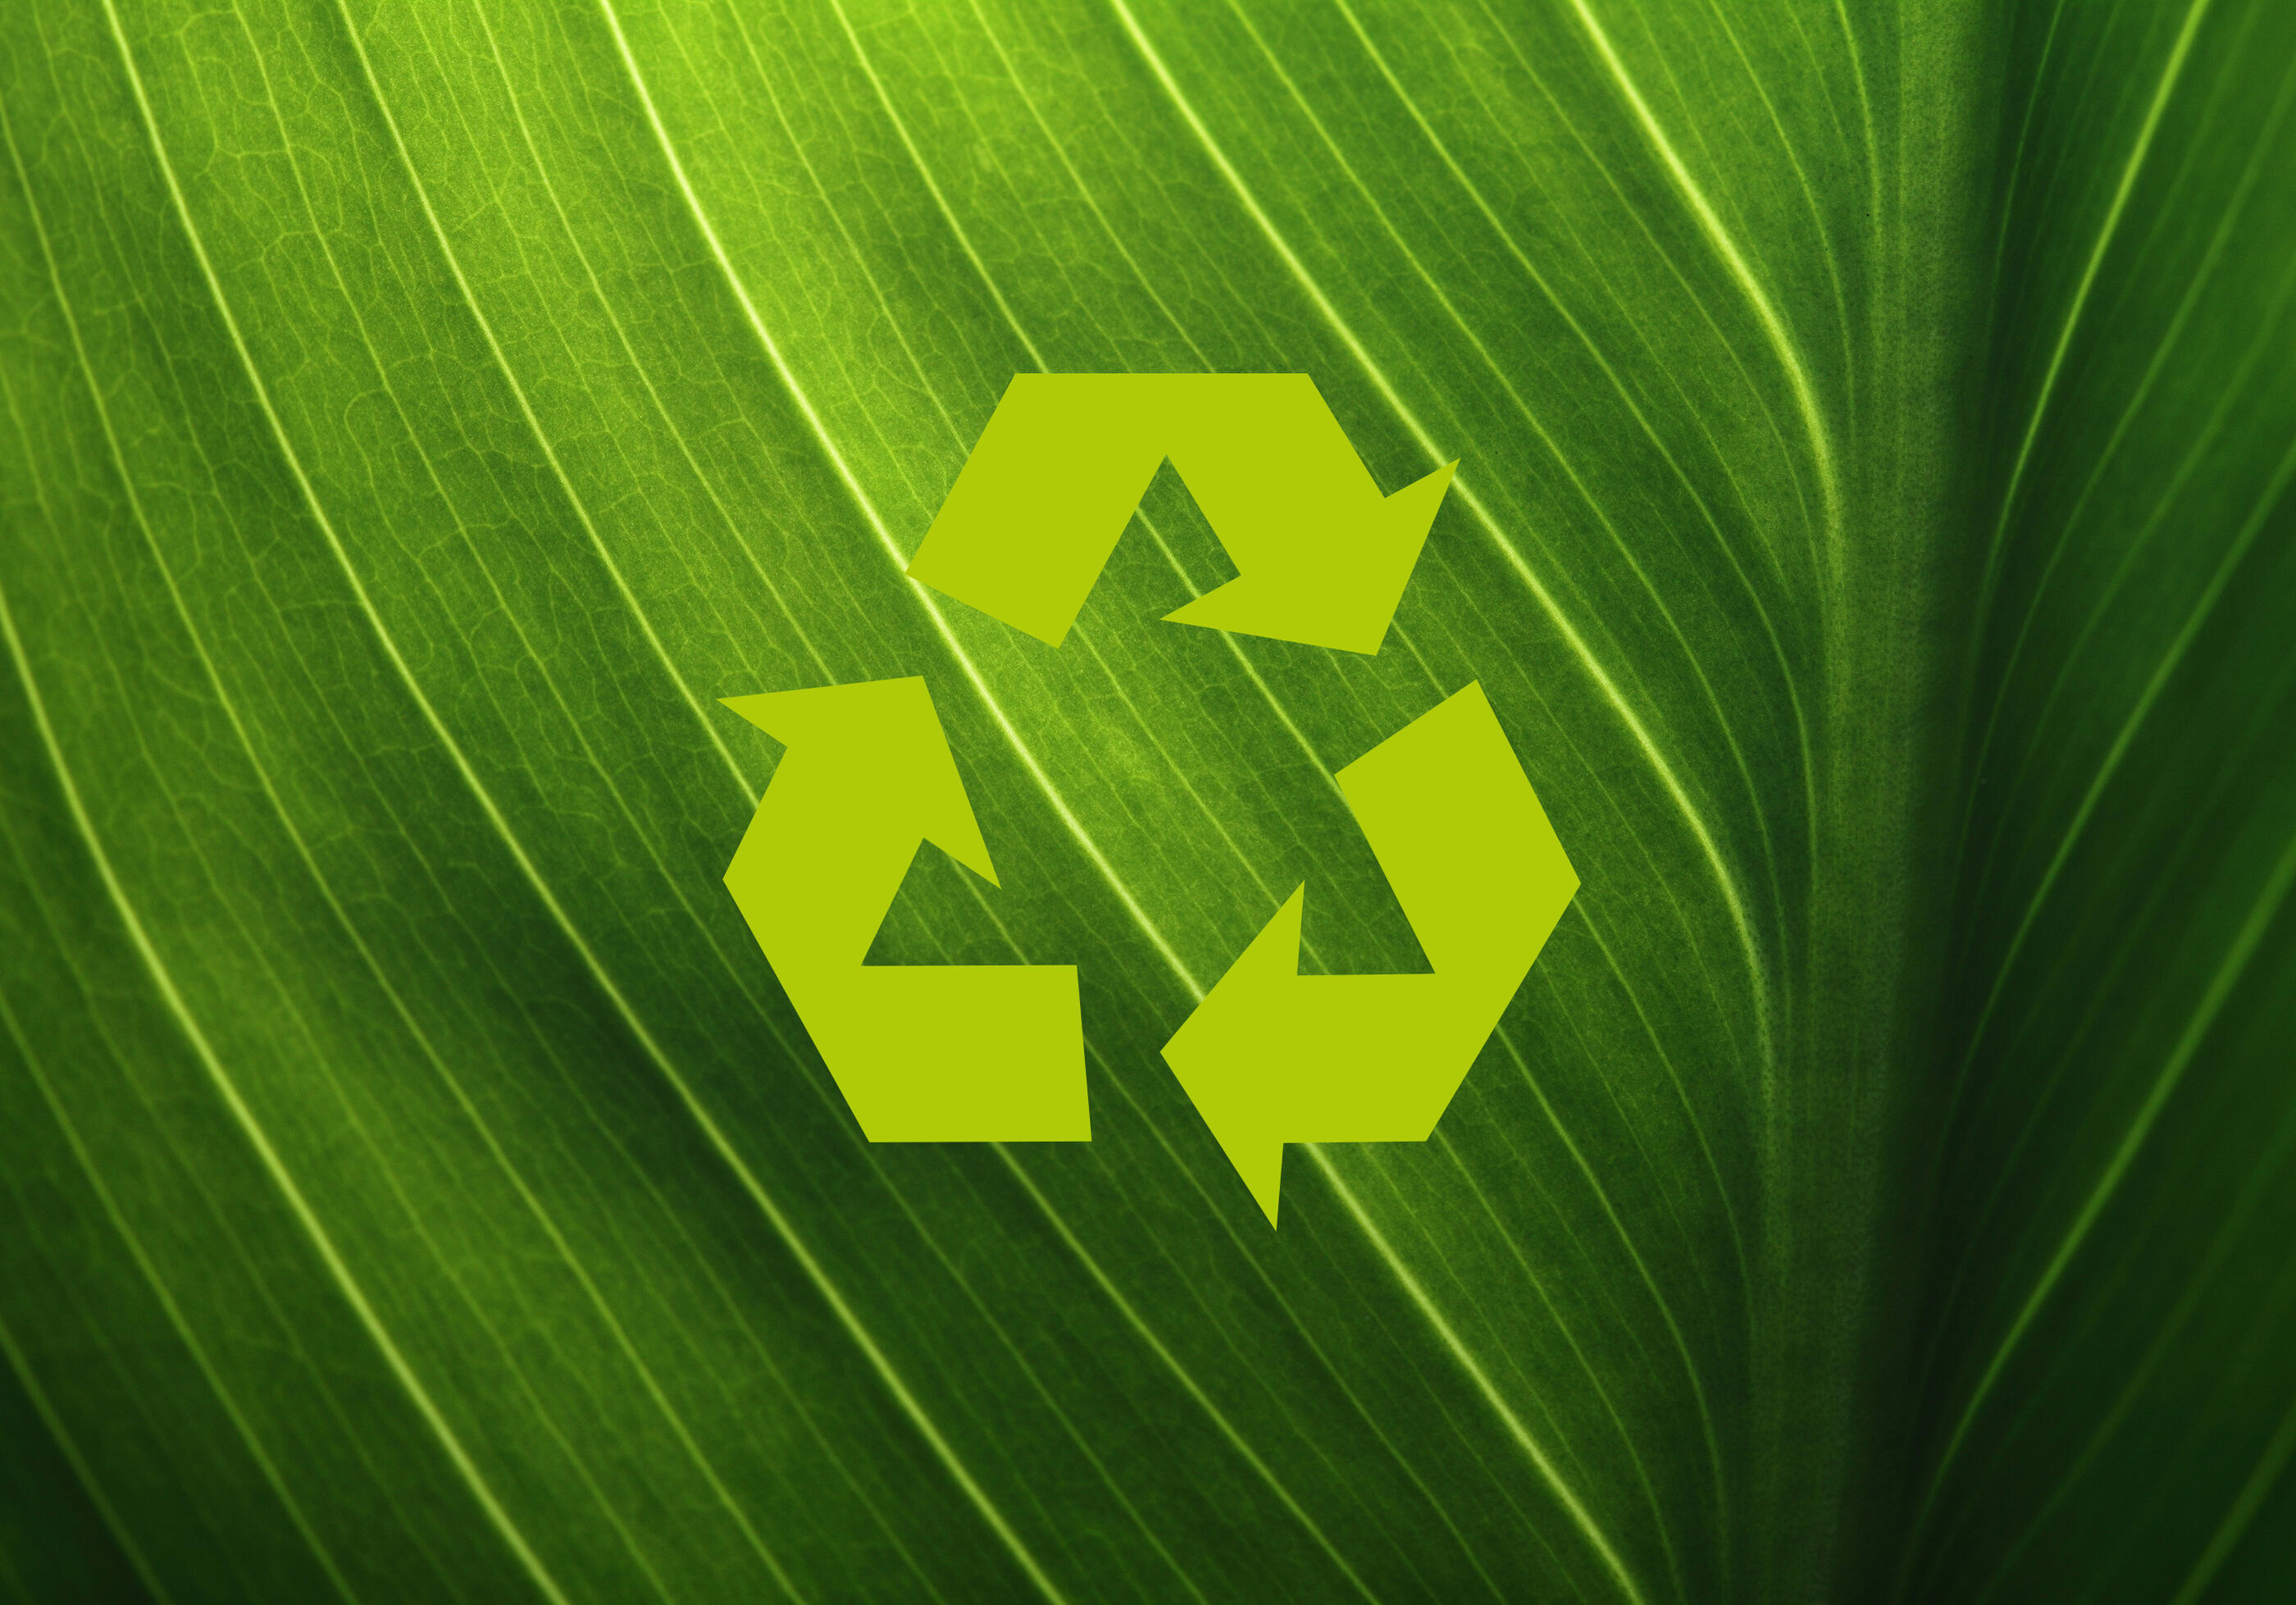 Réutiliser nos emballages pour réduire notre impact écologique